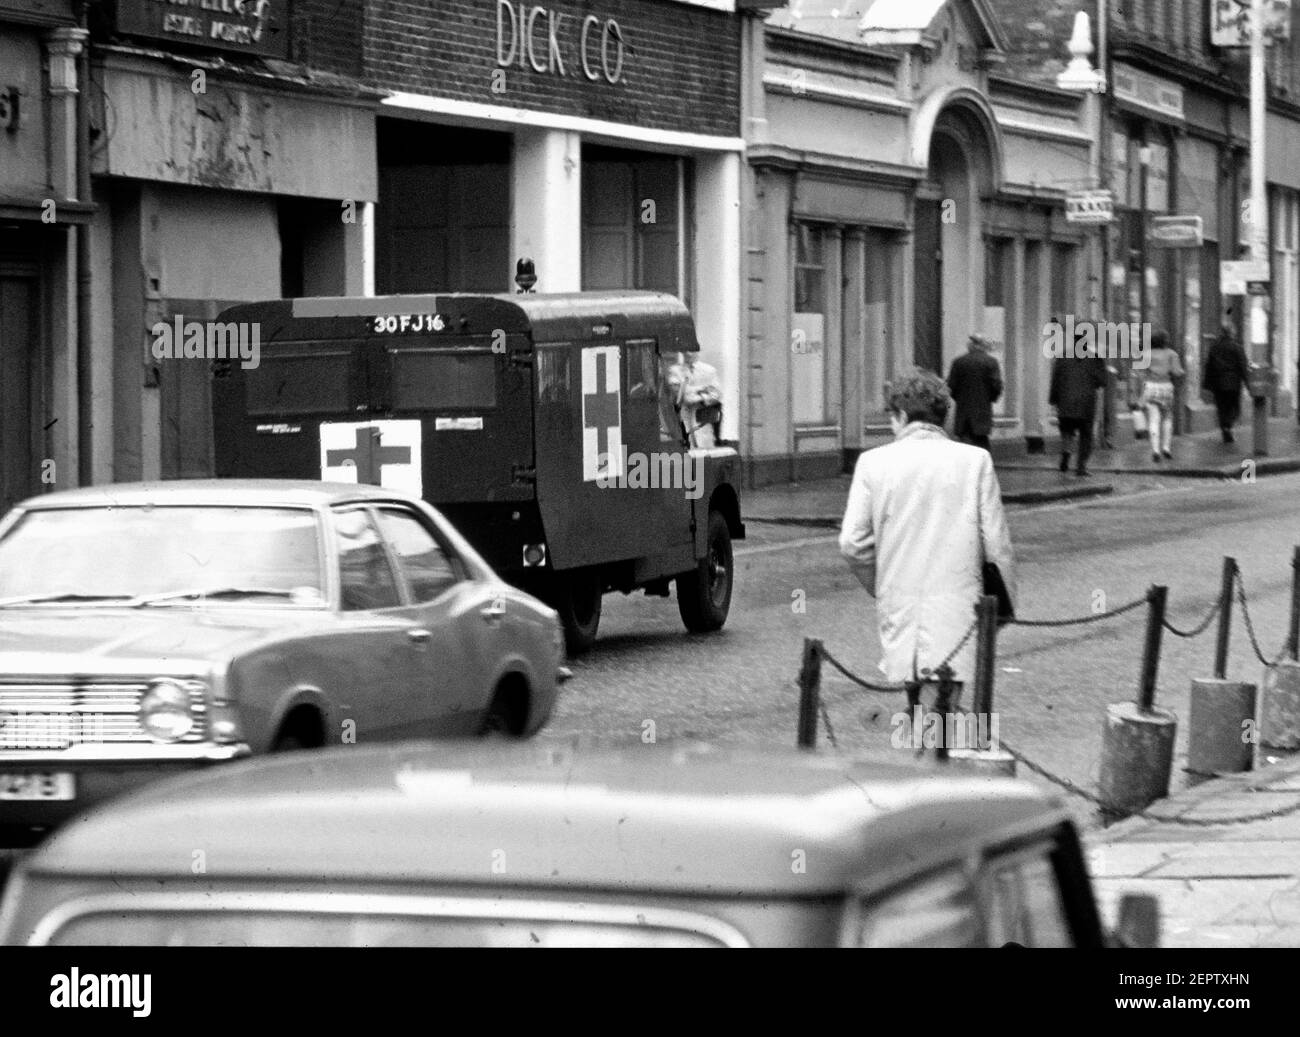 Une ambulance militaire britannique à Belfast pendant les troubles dans les années 70, Irlande du Nord, Royaume-Uni Banque D'Images